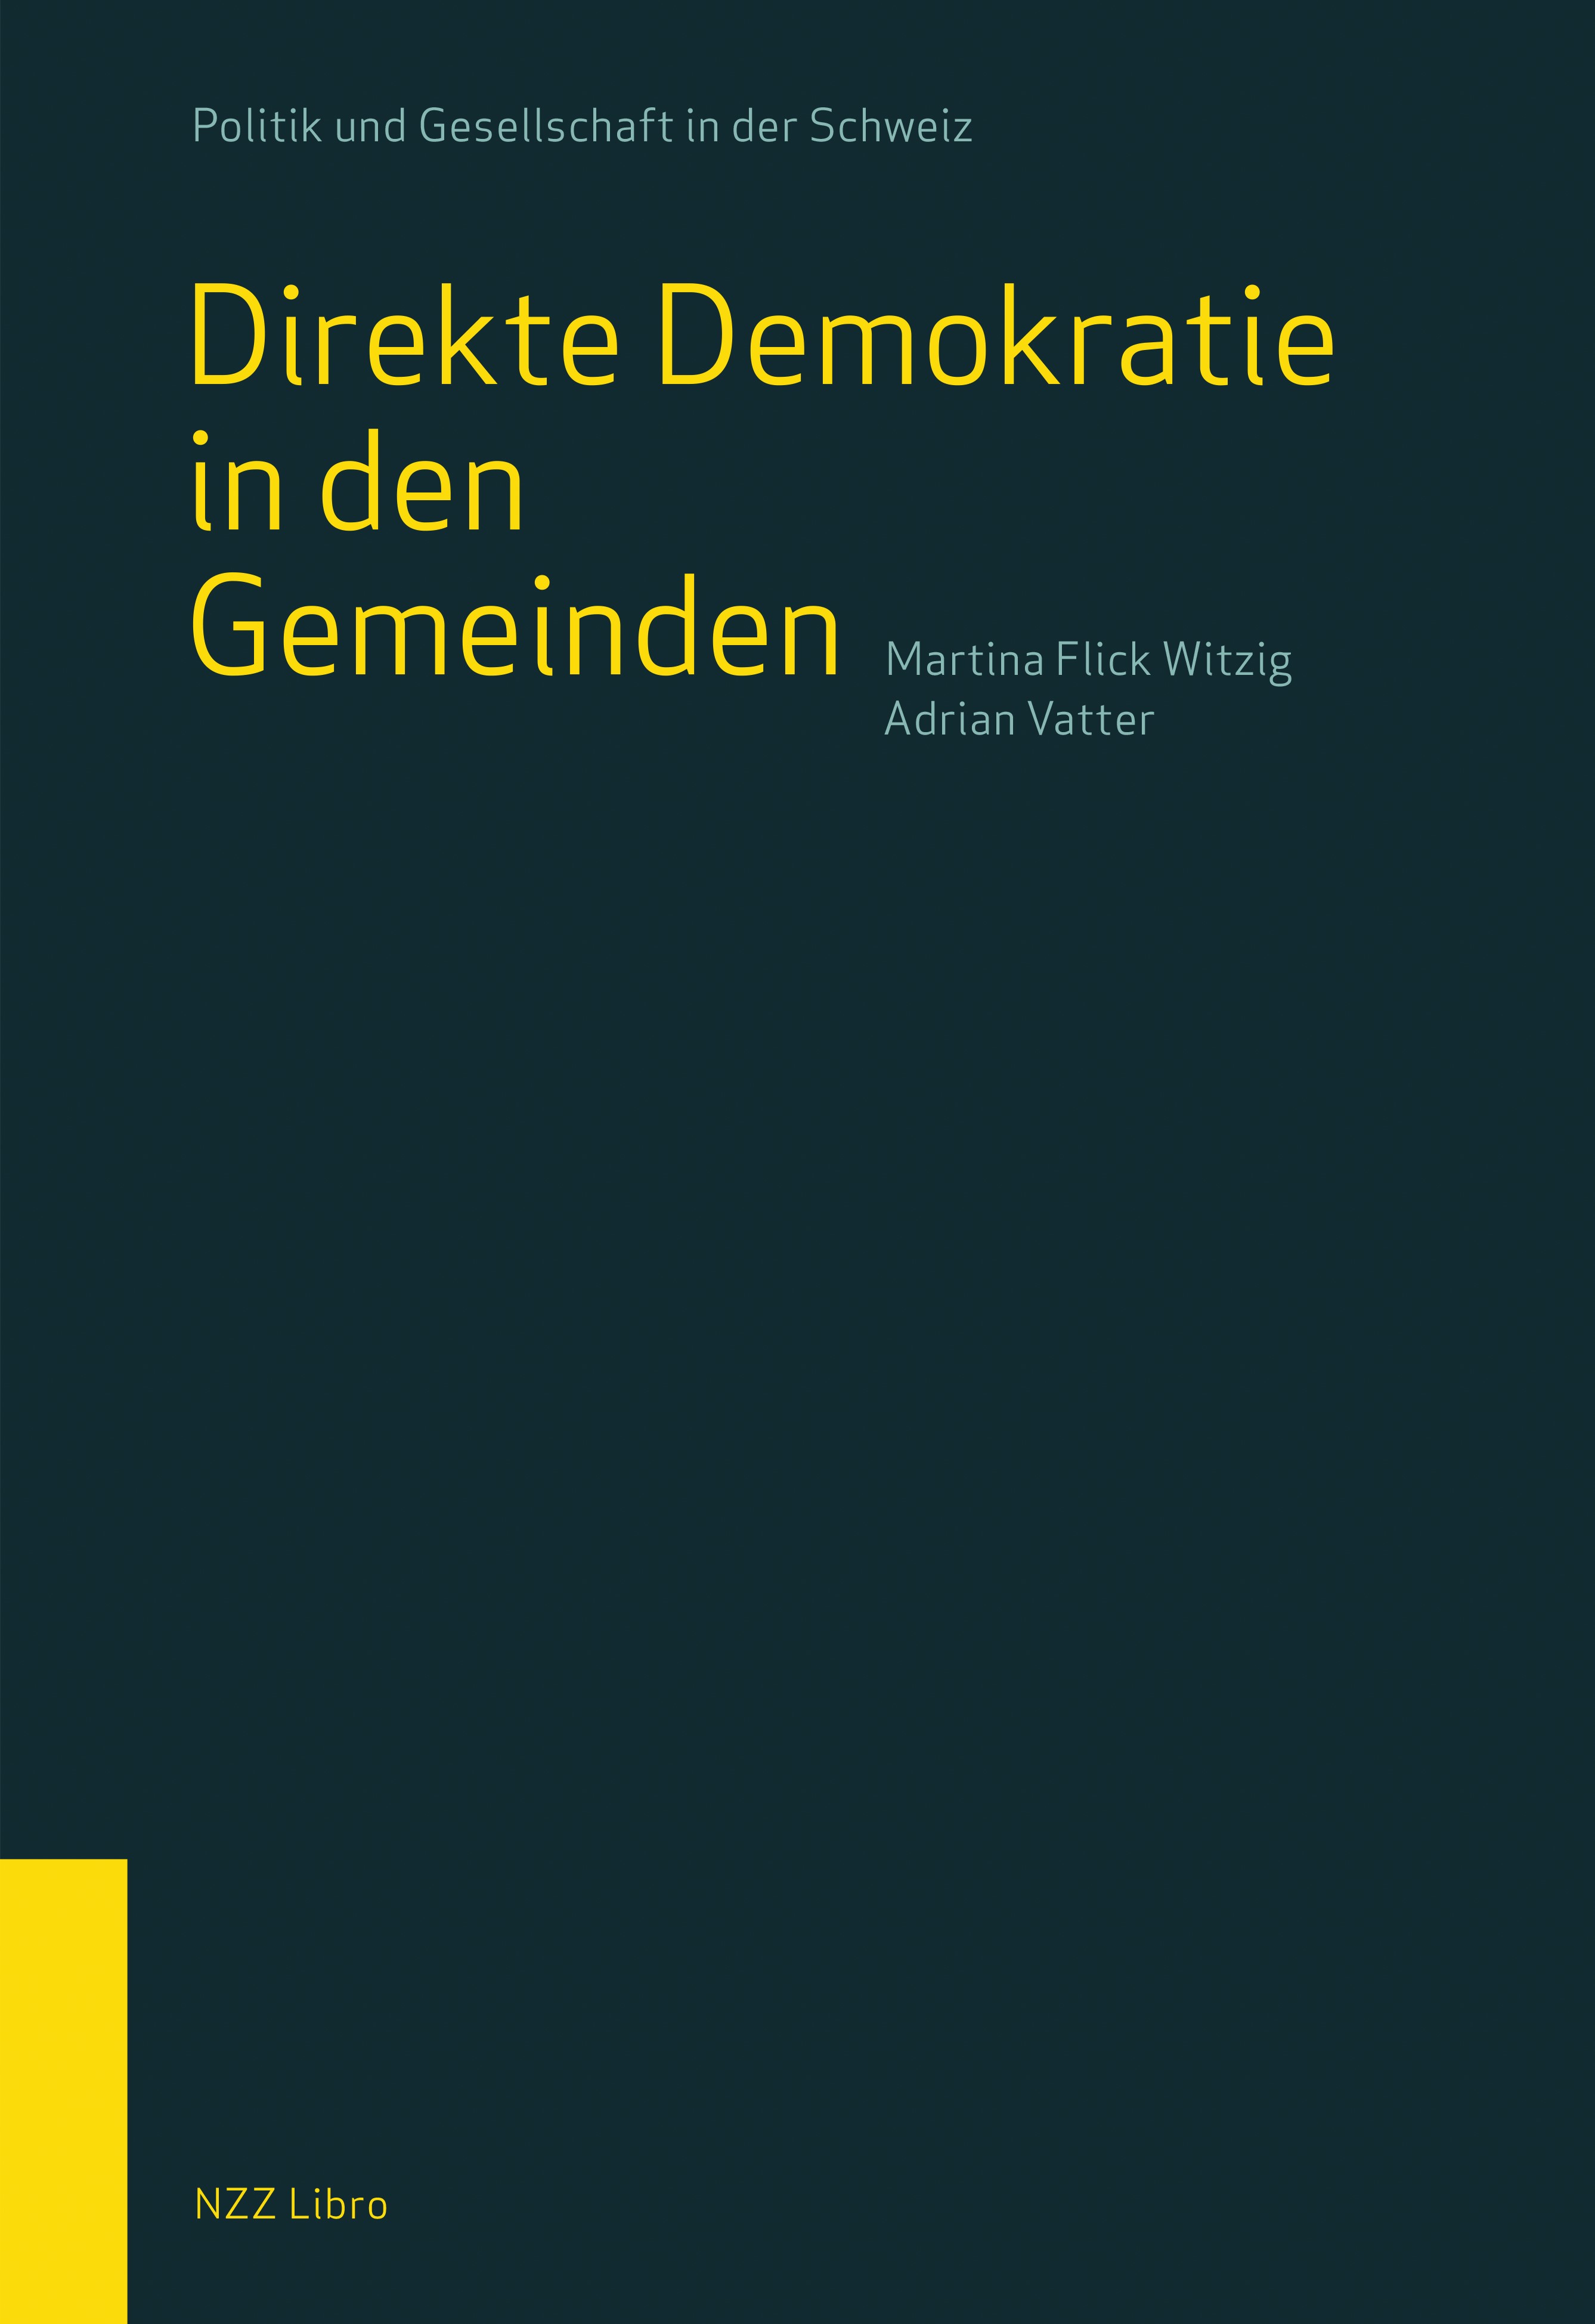 Buchcover: Politik und Gesellschaft in der Schweiz - Direkte Demokratie in den Gemeinden - Martina Flick Witzig / Adrian Vatter